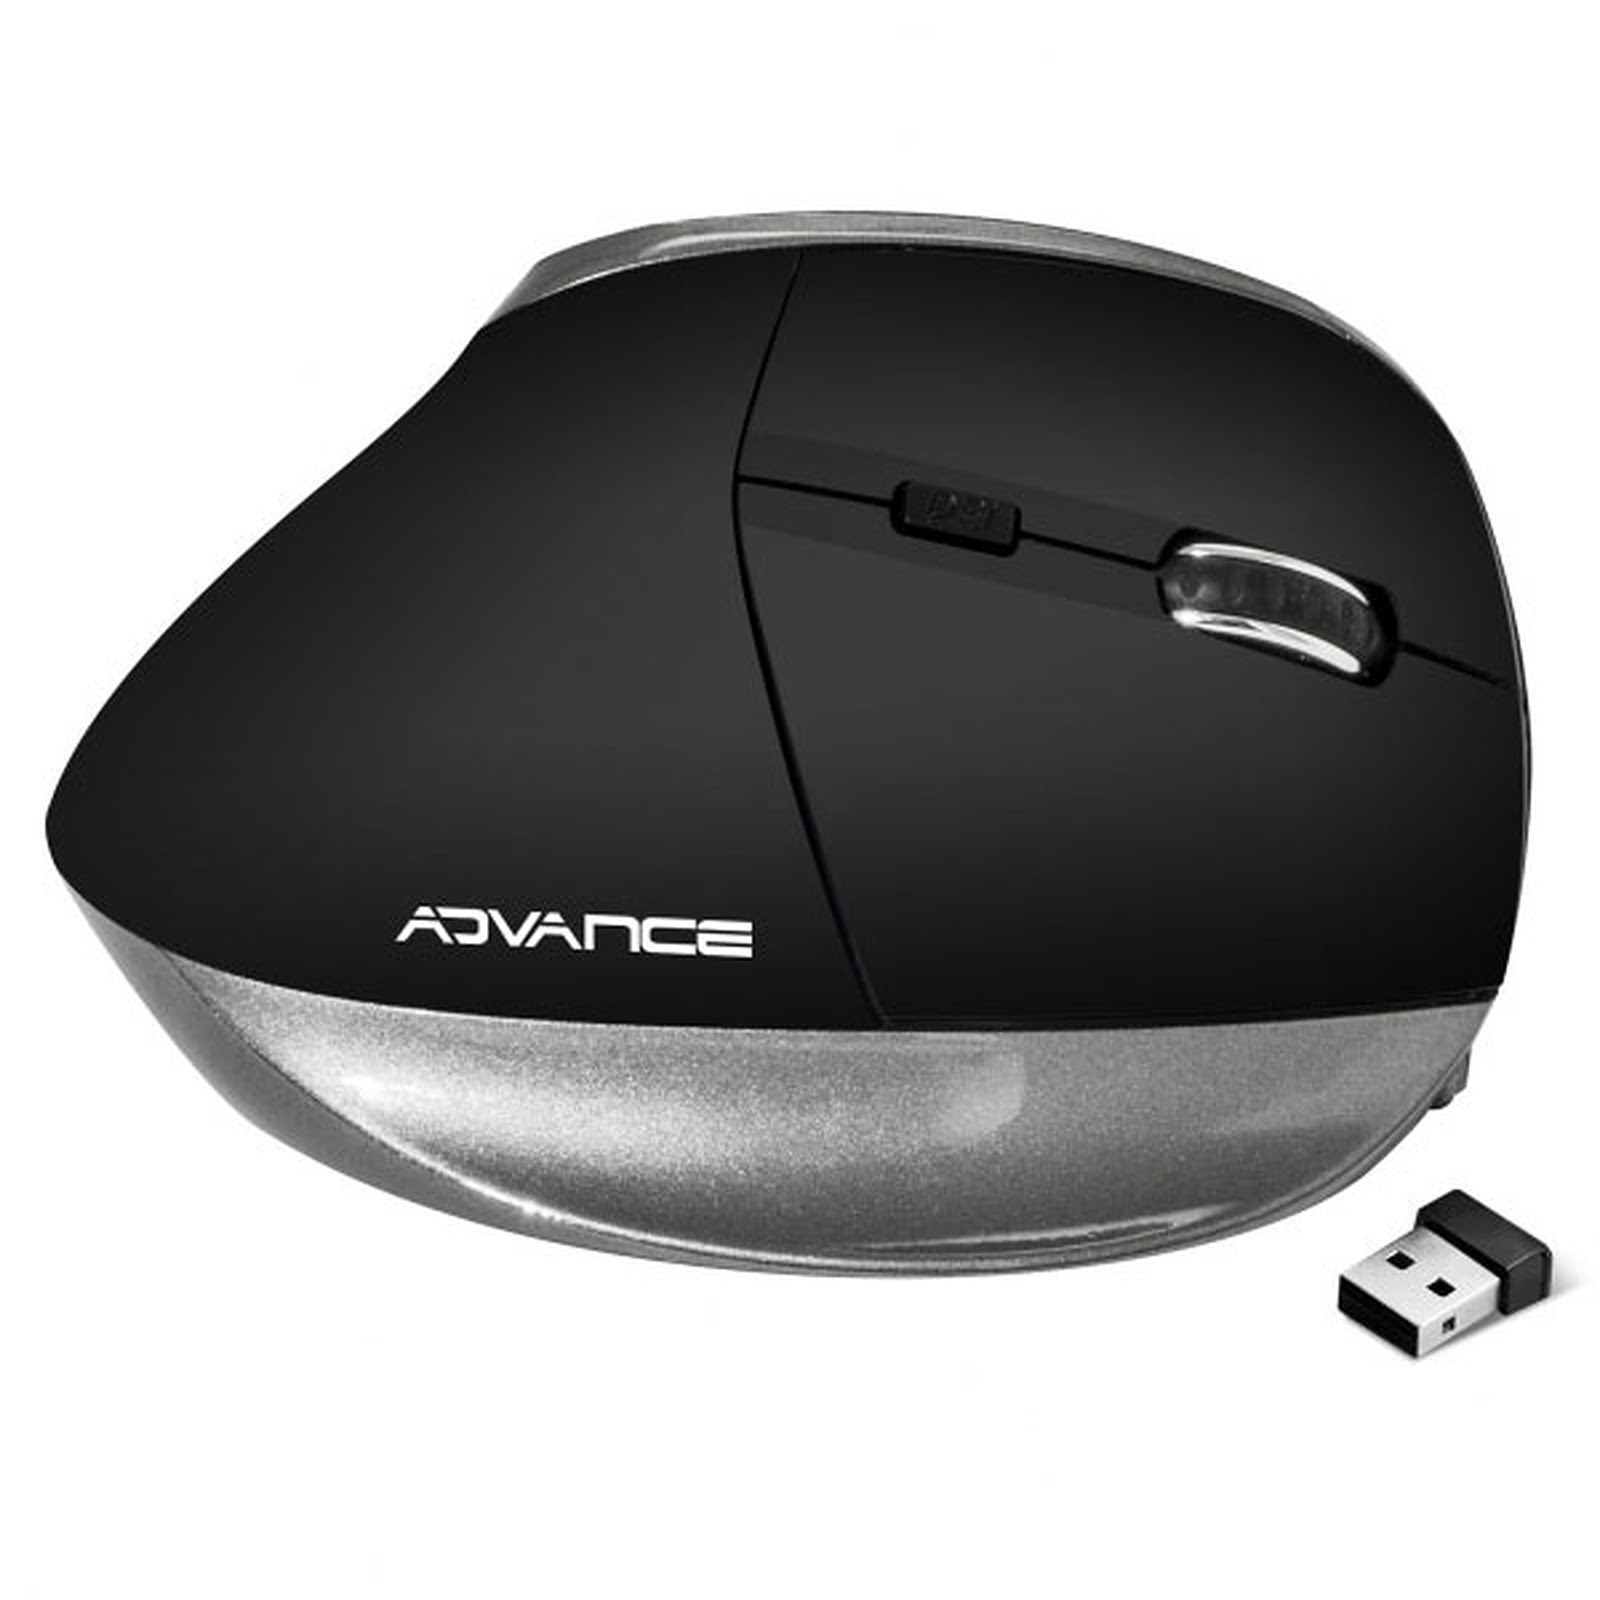 Advance Vertical Plus Black (sans fil ergonomique) - Souris PC - 3